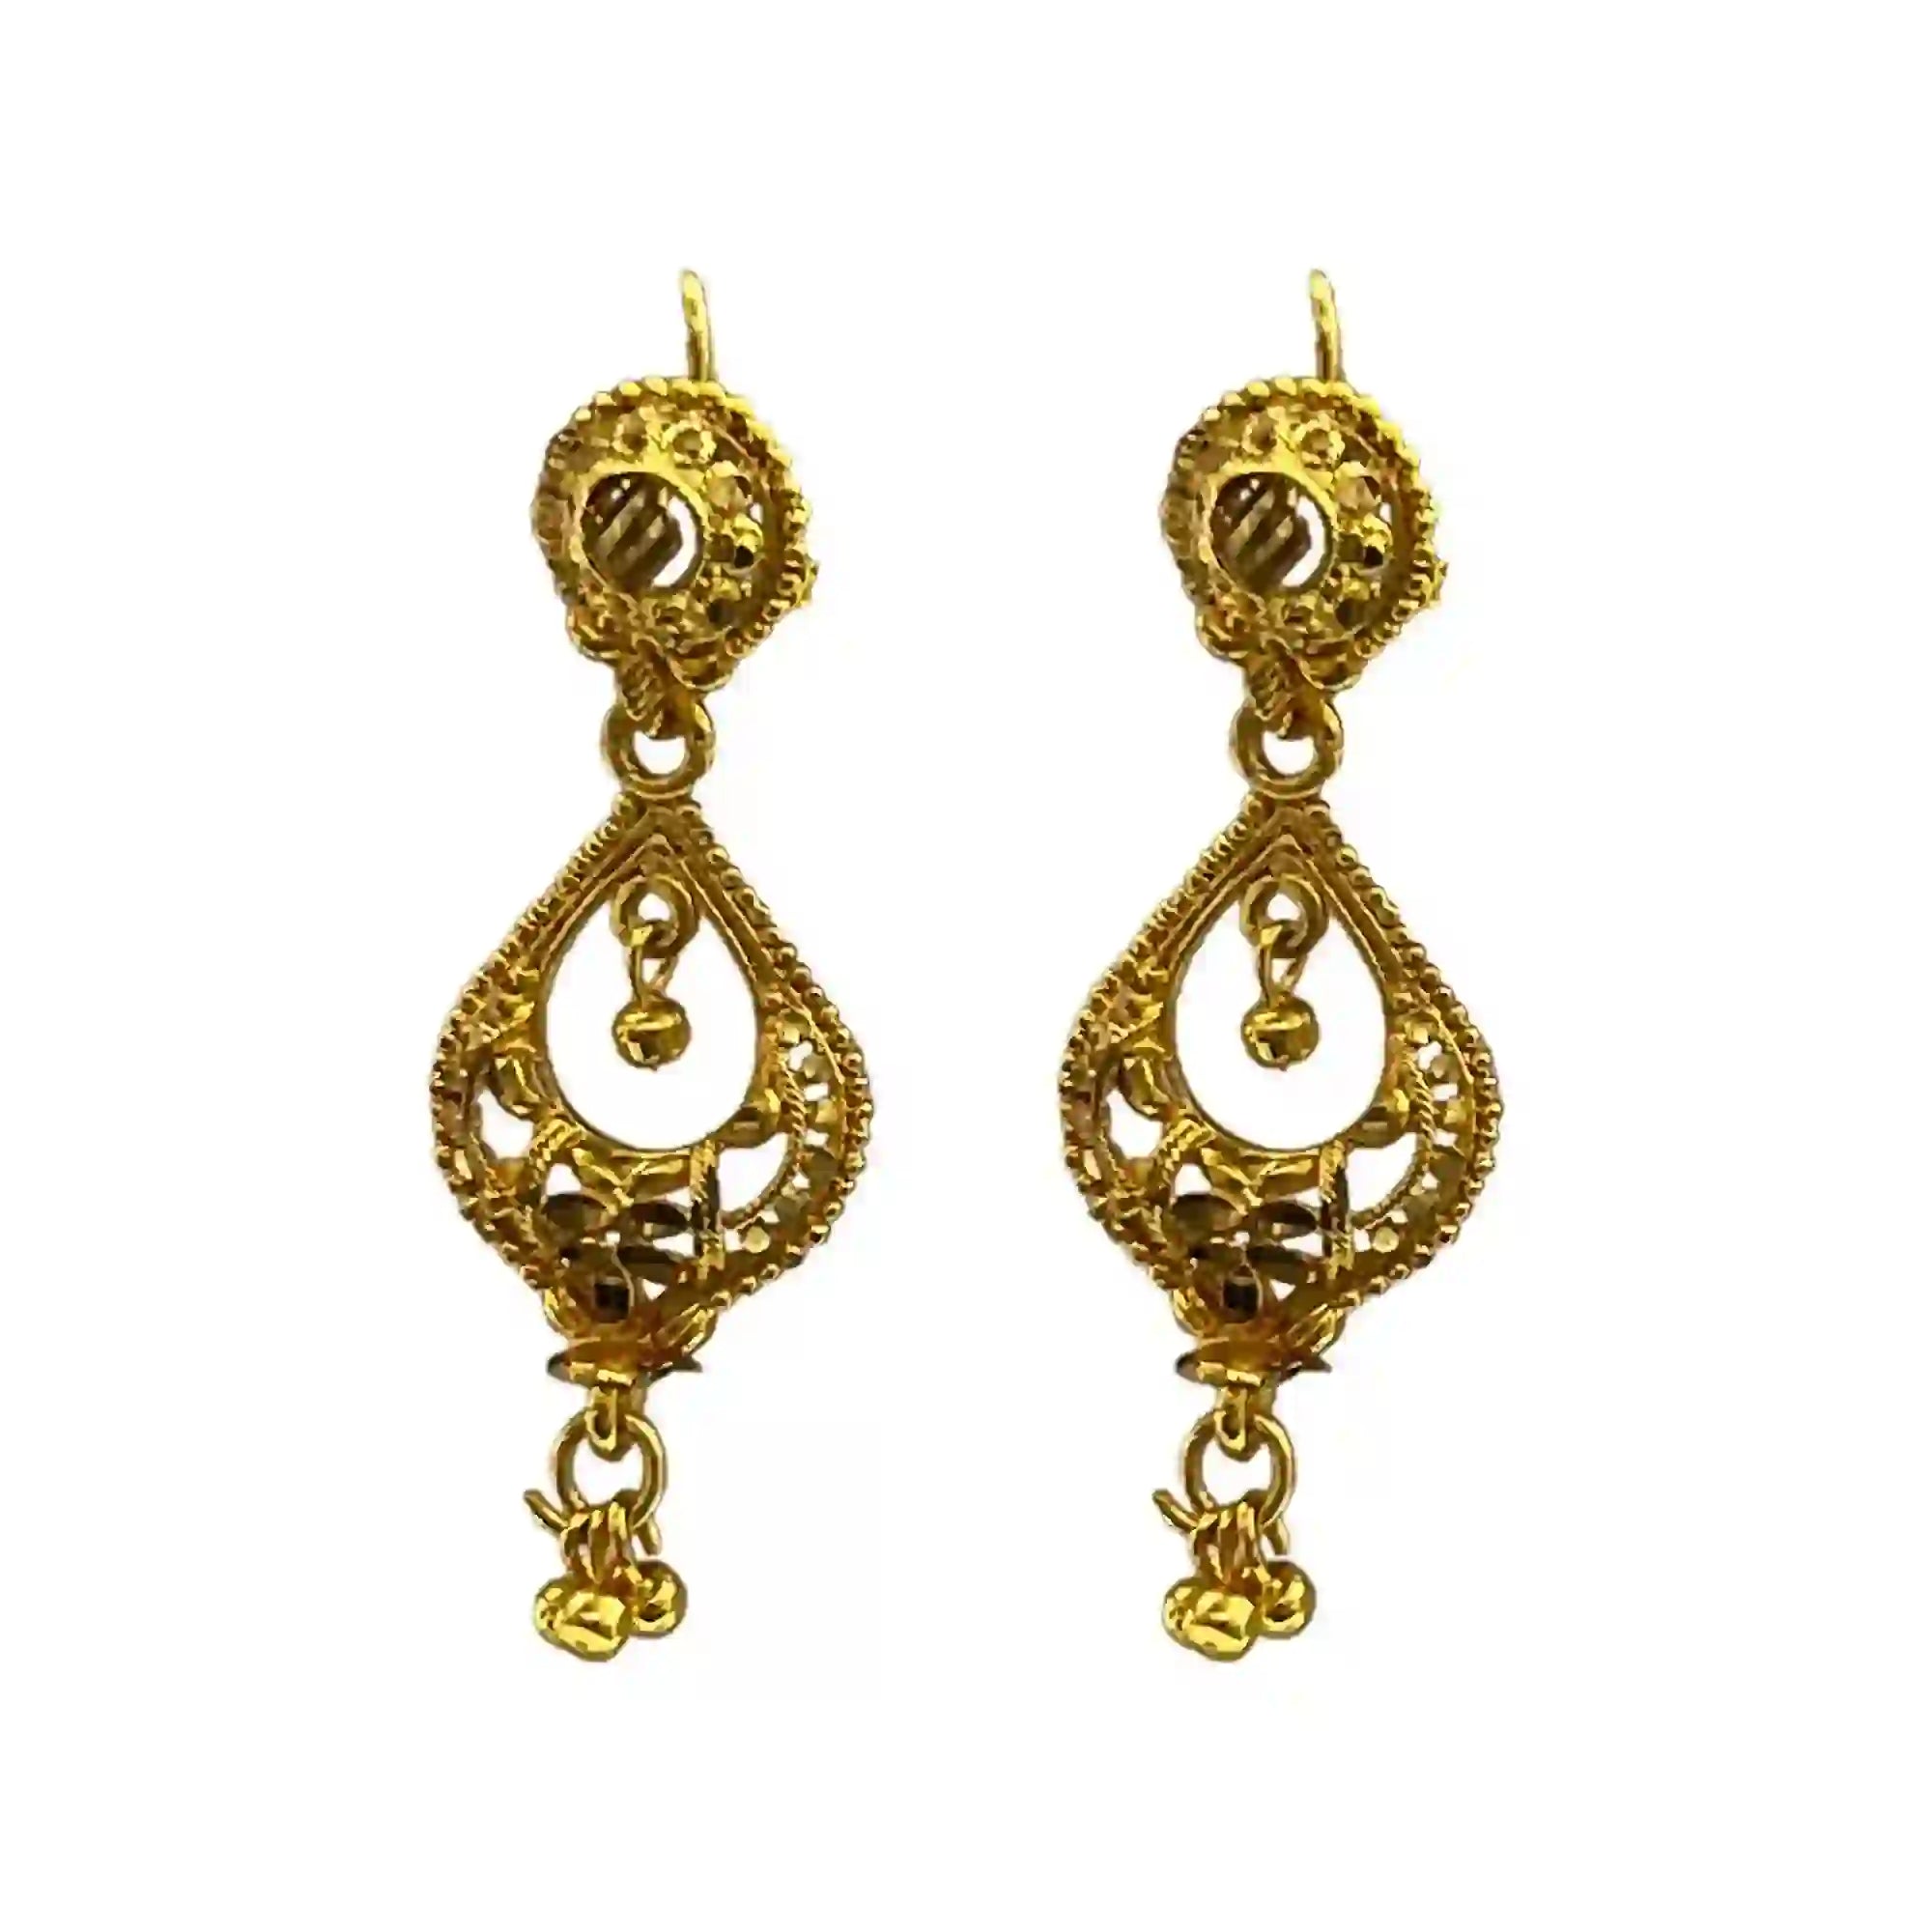 ethinic earrings, drop earrings, rounf earrings, unique earrings